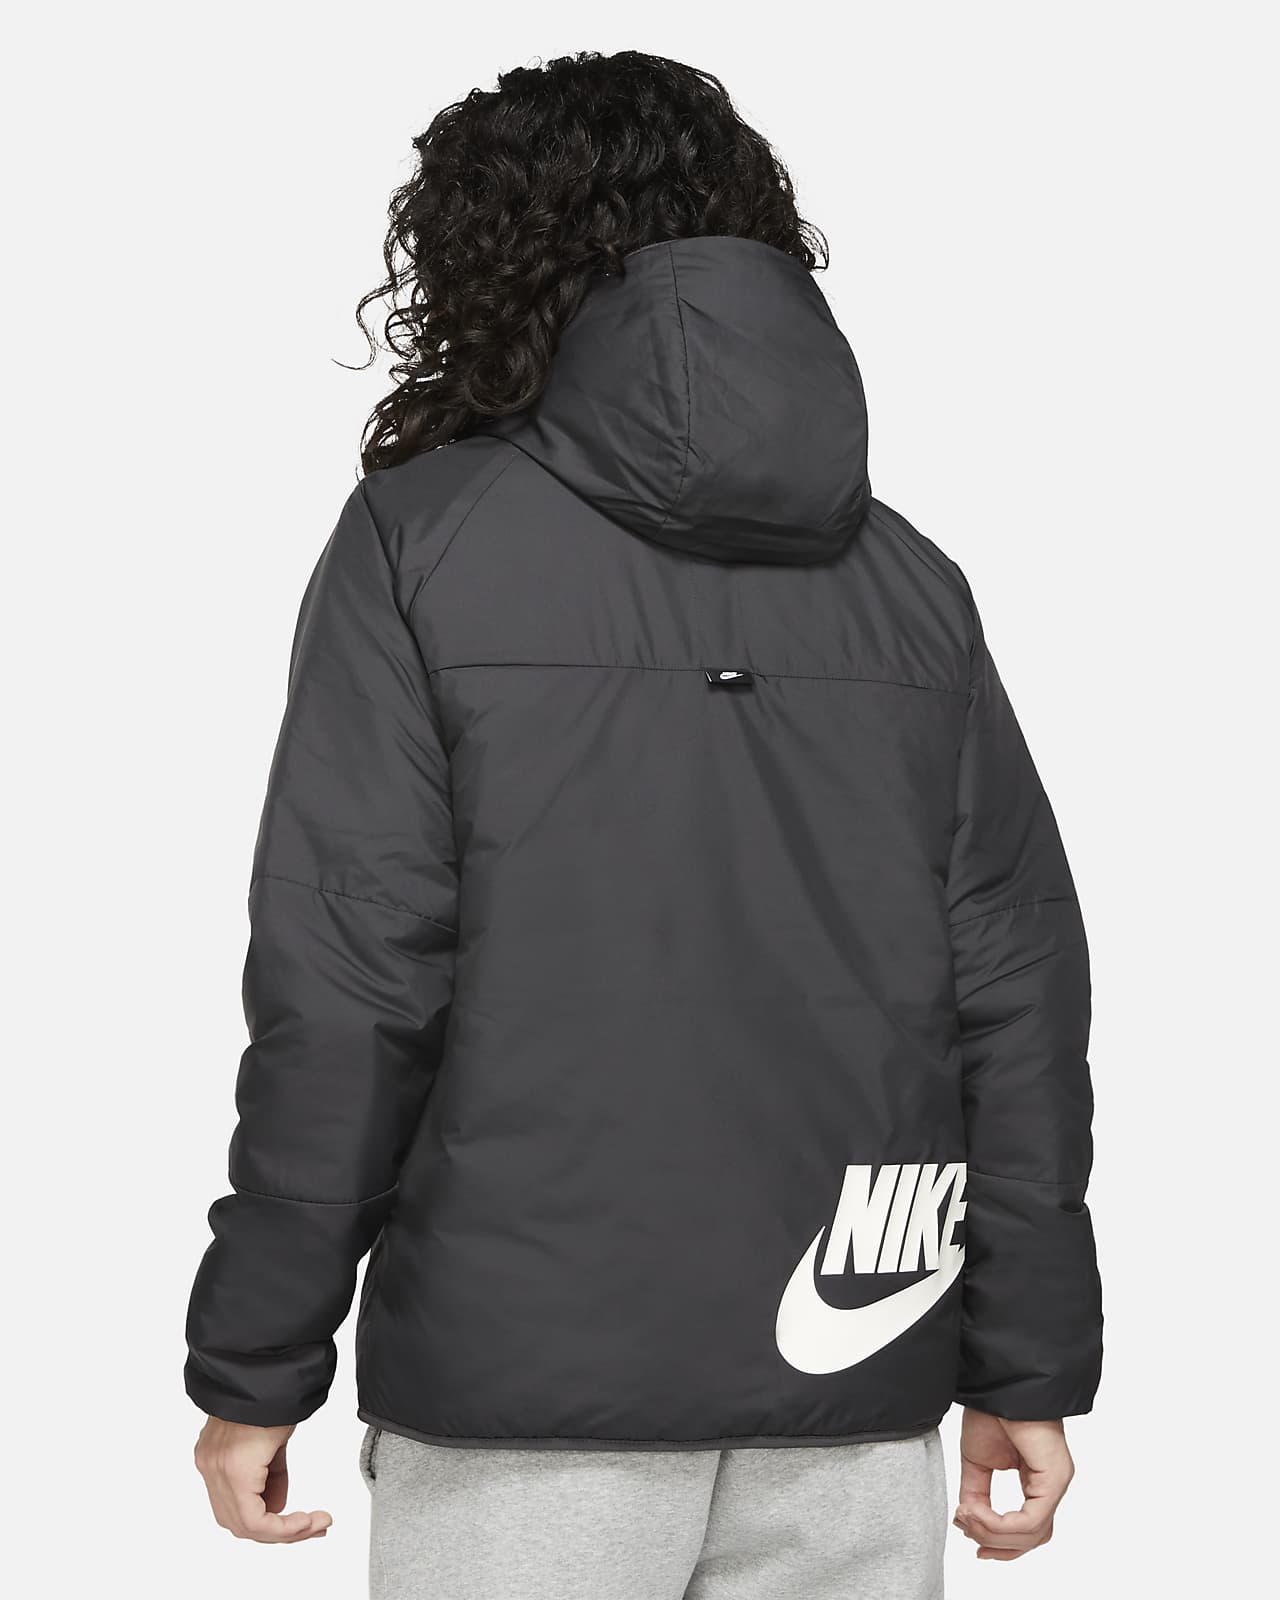 nike jacket with hood